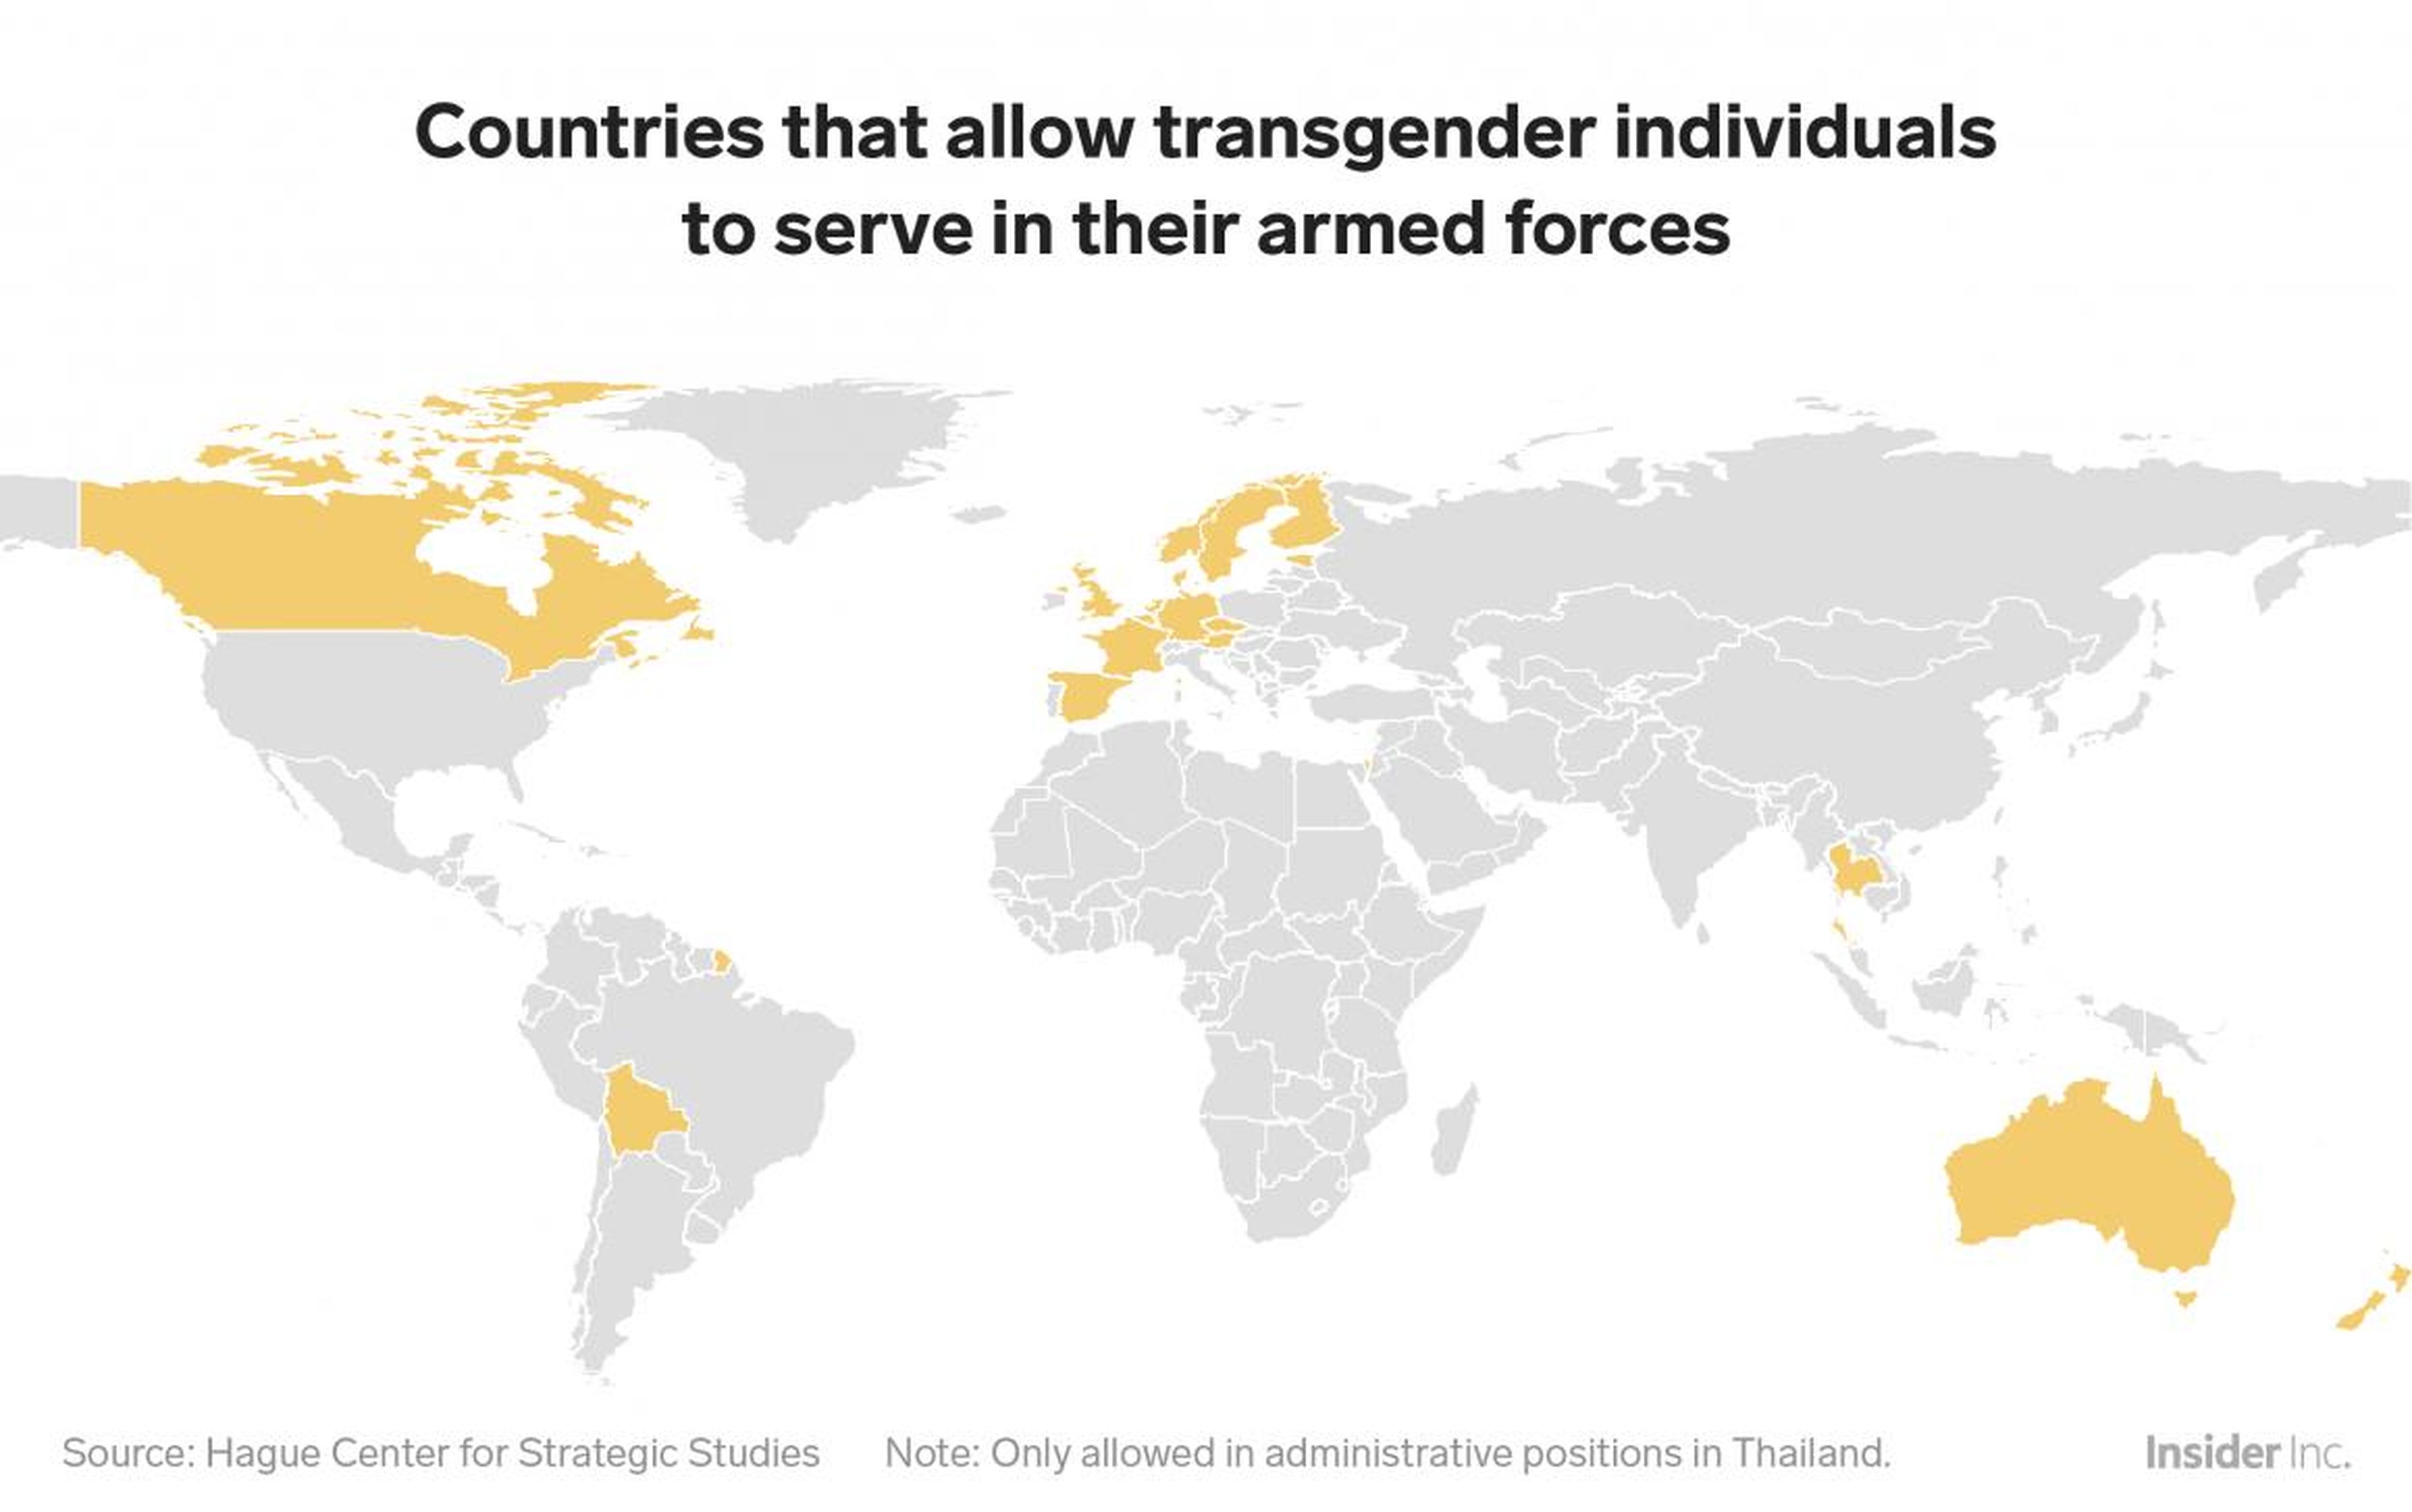 Al hilo de la prohibición de transgénero de entrar en el ejército impuesta por Trump, solo 19 países en el mundo permiten que personas transexuales sirvan en el ejército.